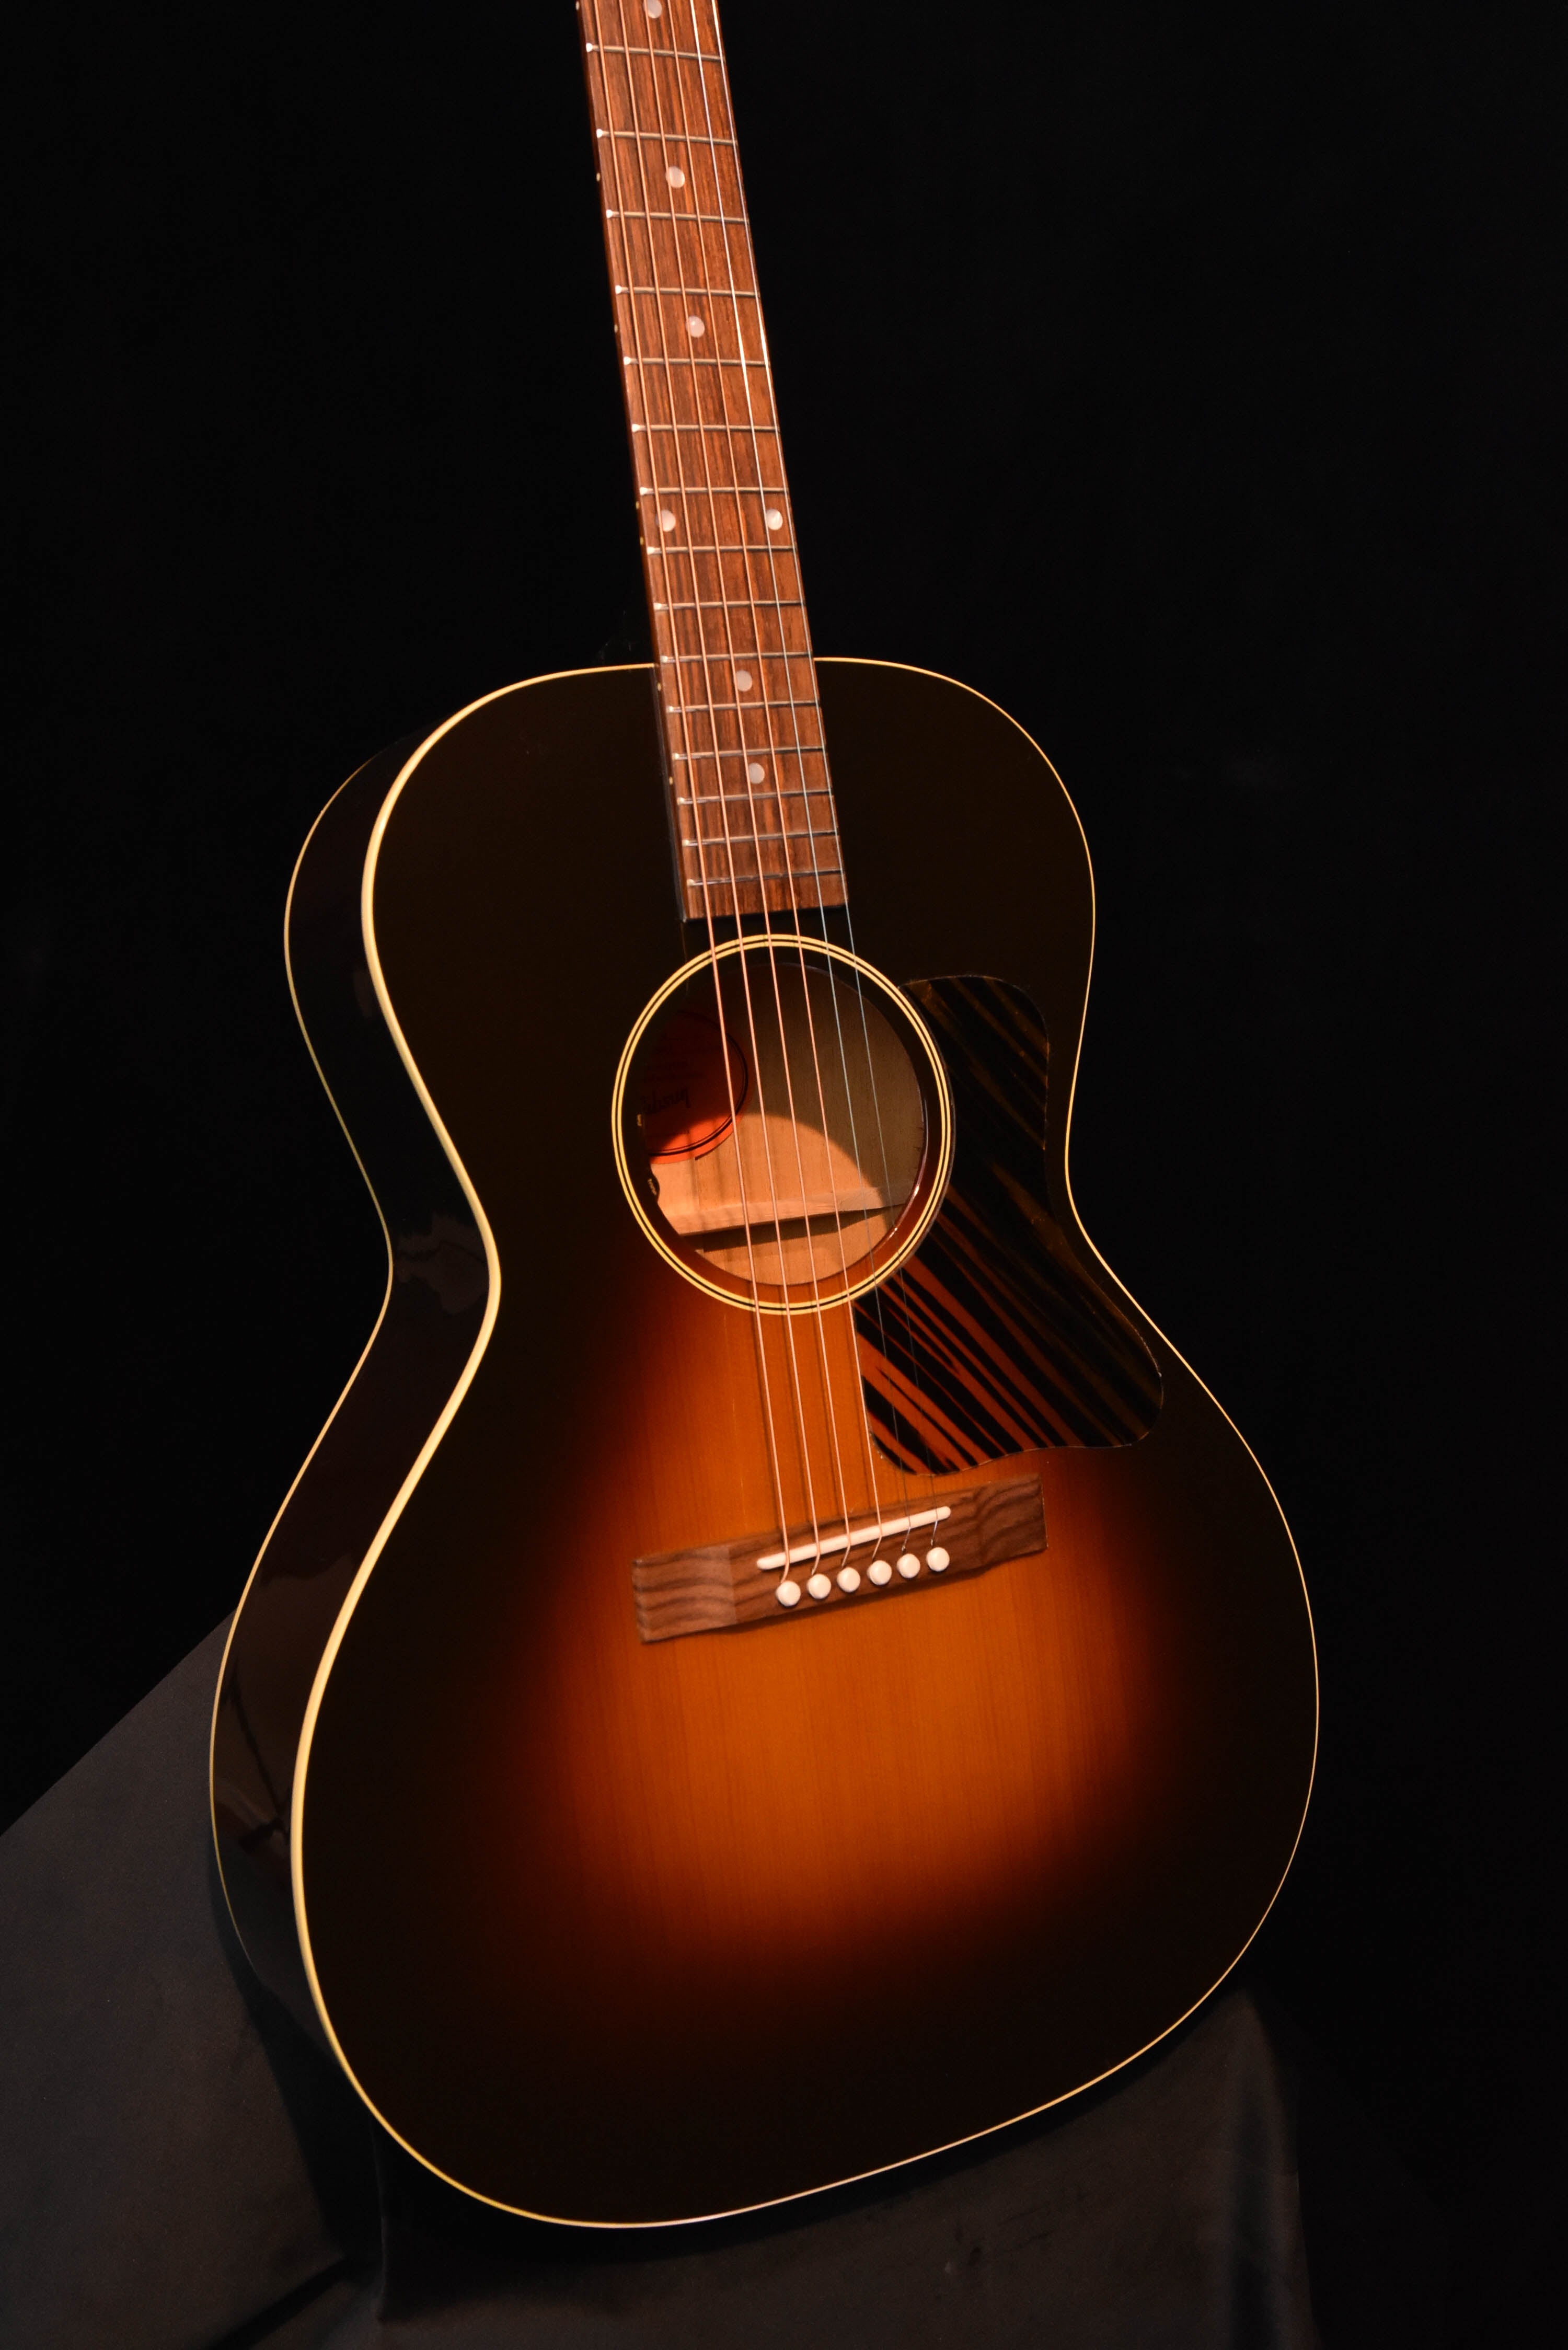 Gibson L-00 Original Vintage Sunburst Acoustic Guitar